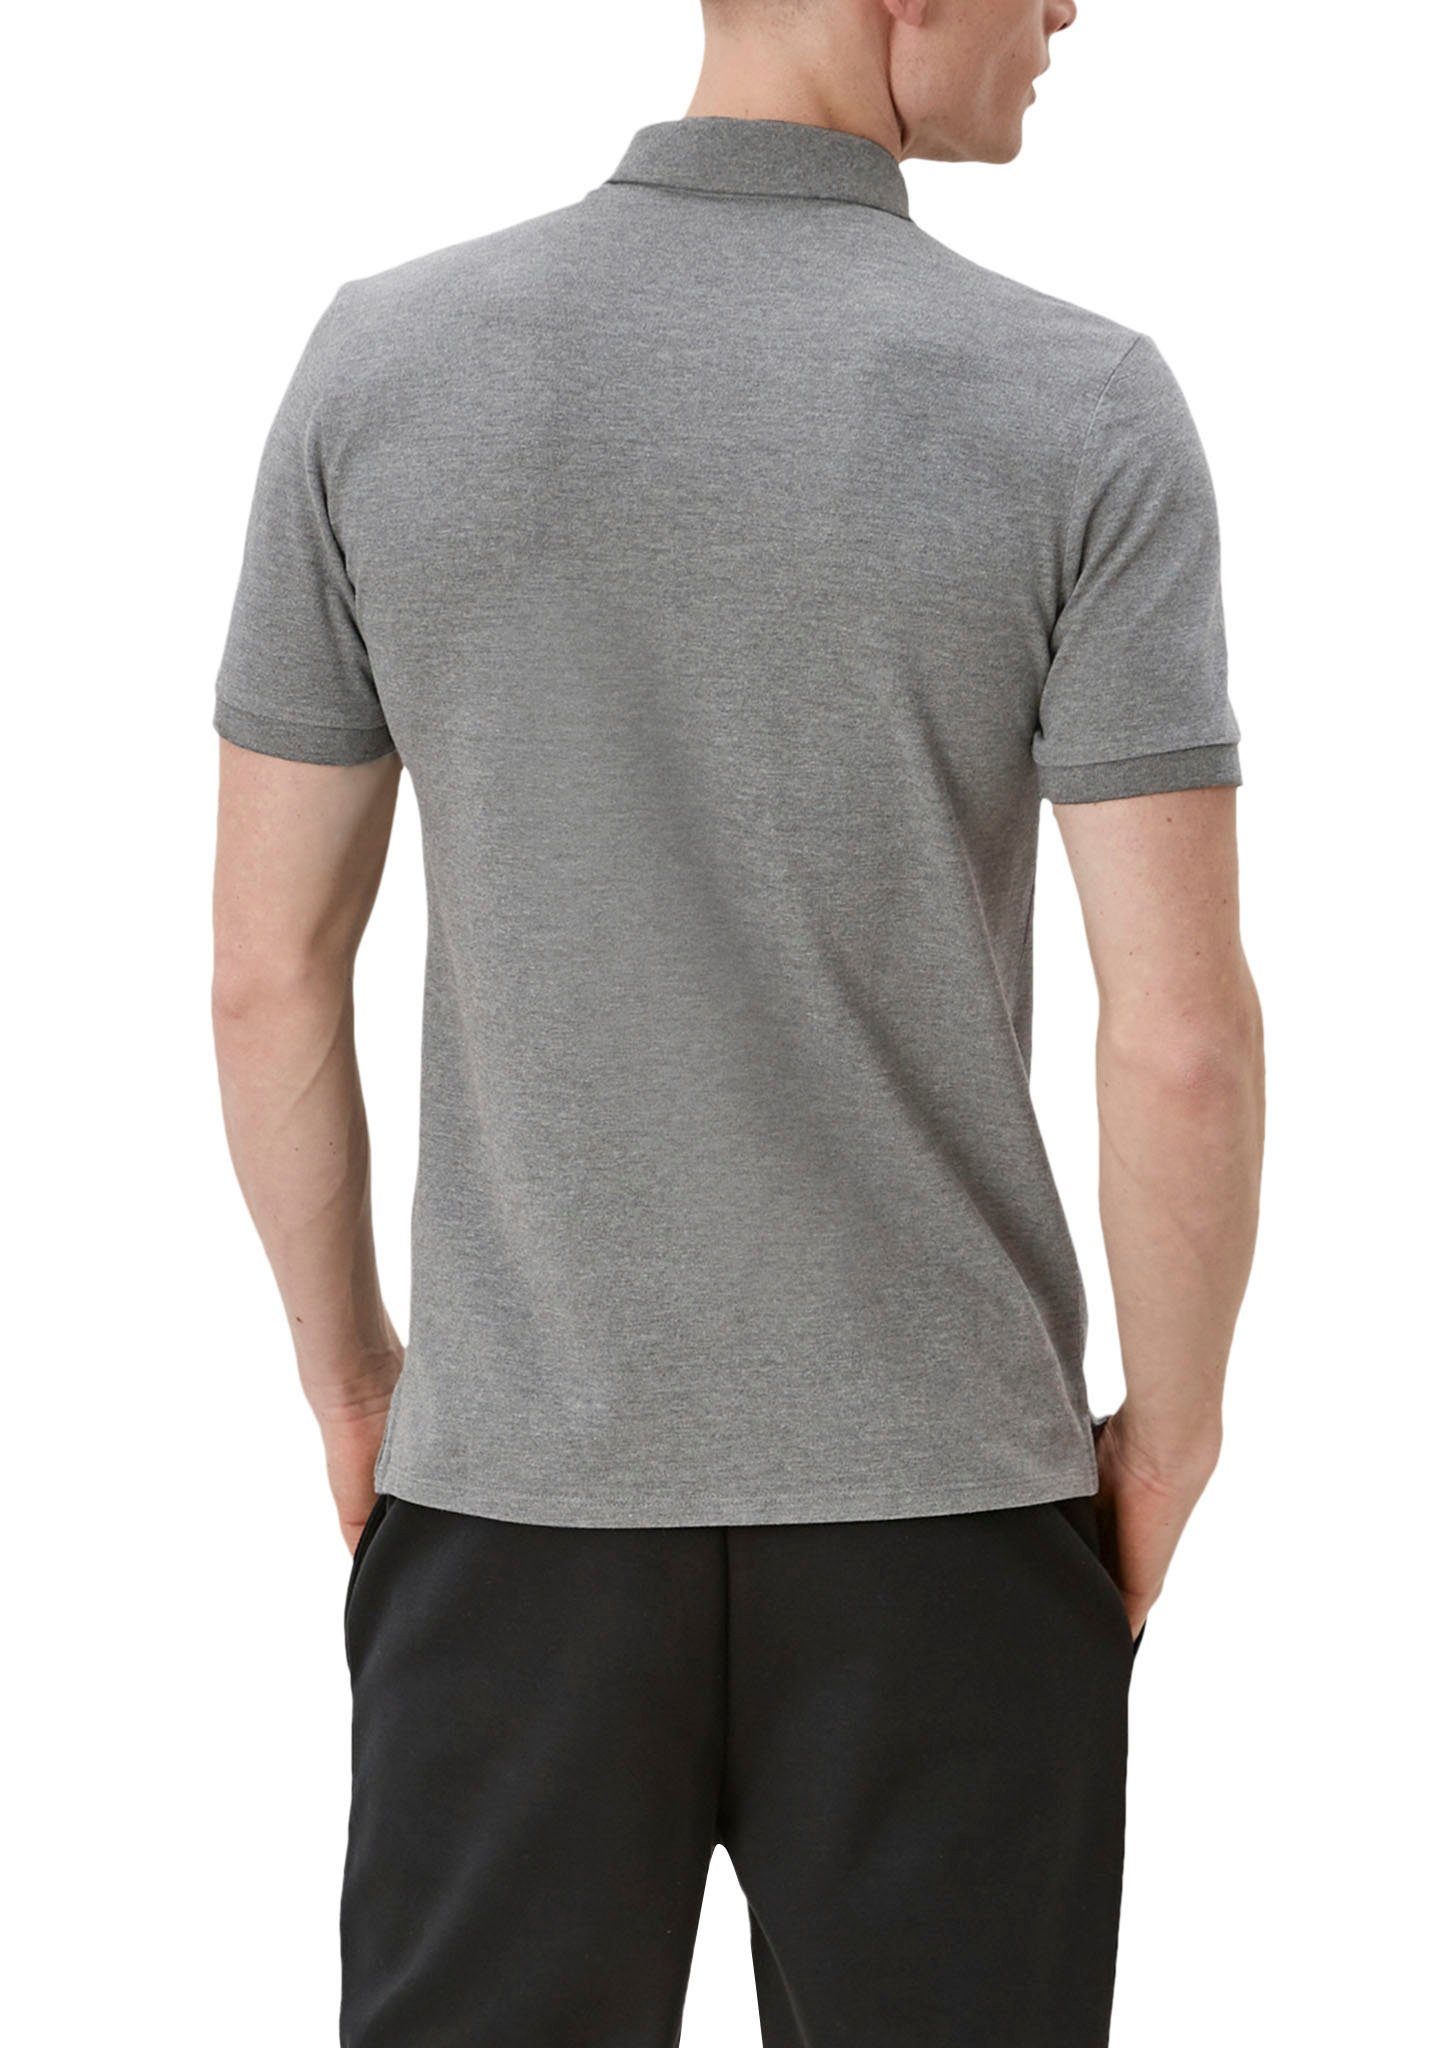 grey/black Einschnitte QS an den Seiten Poloshirt